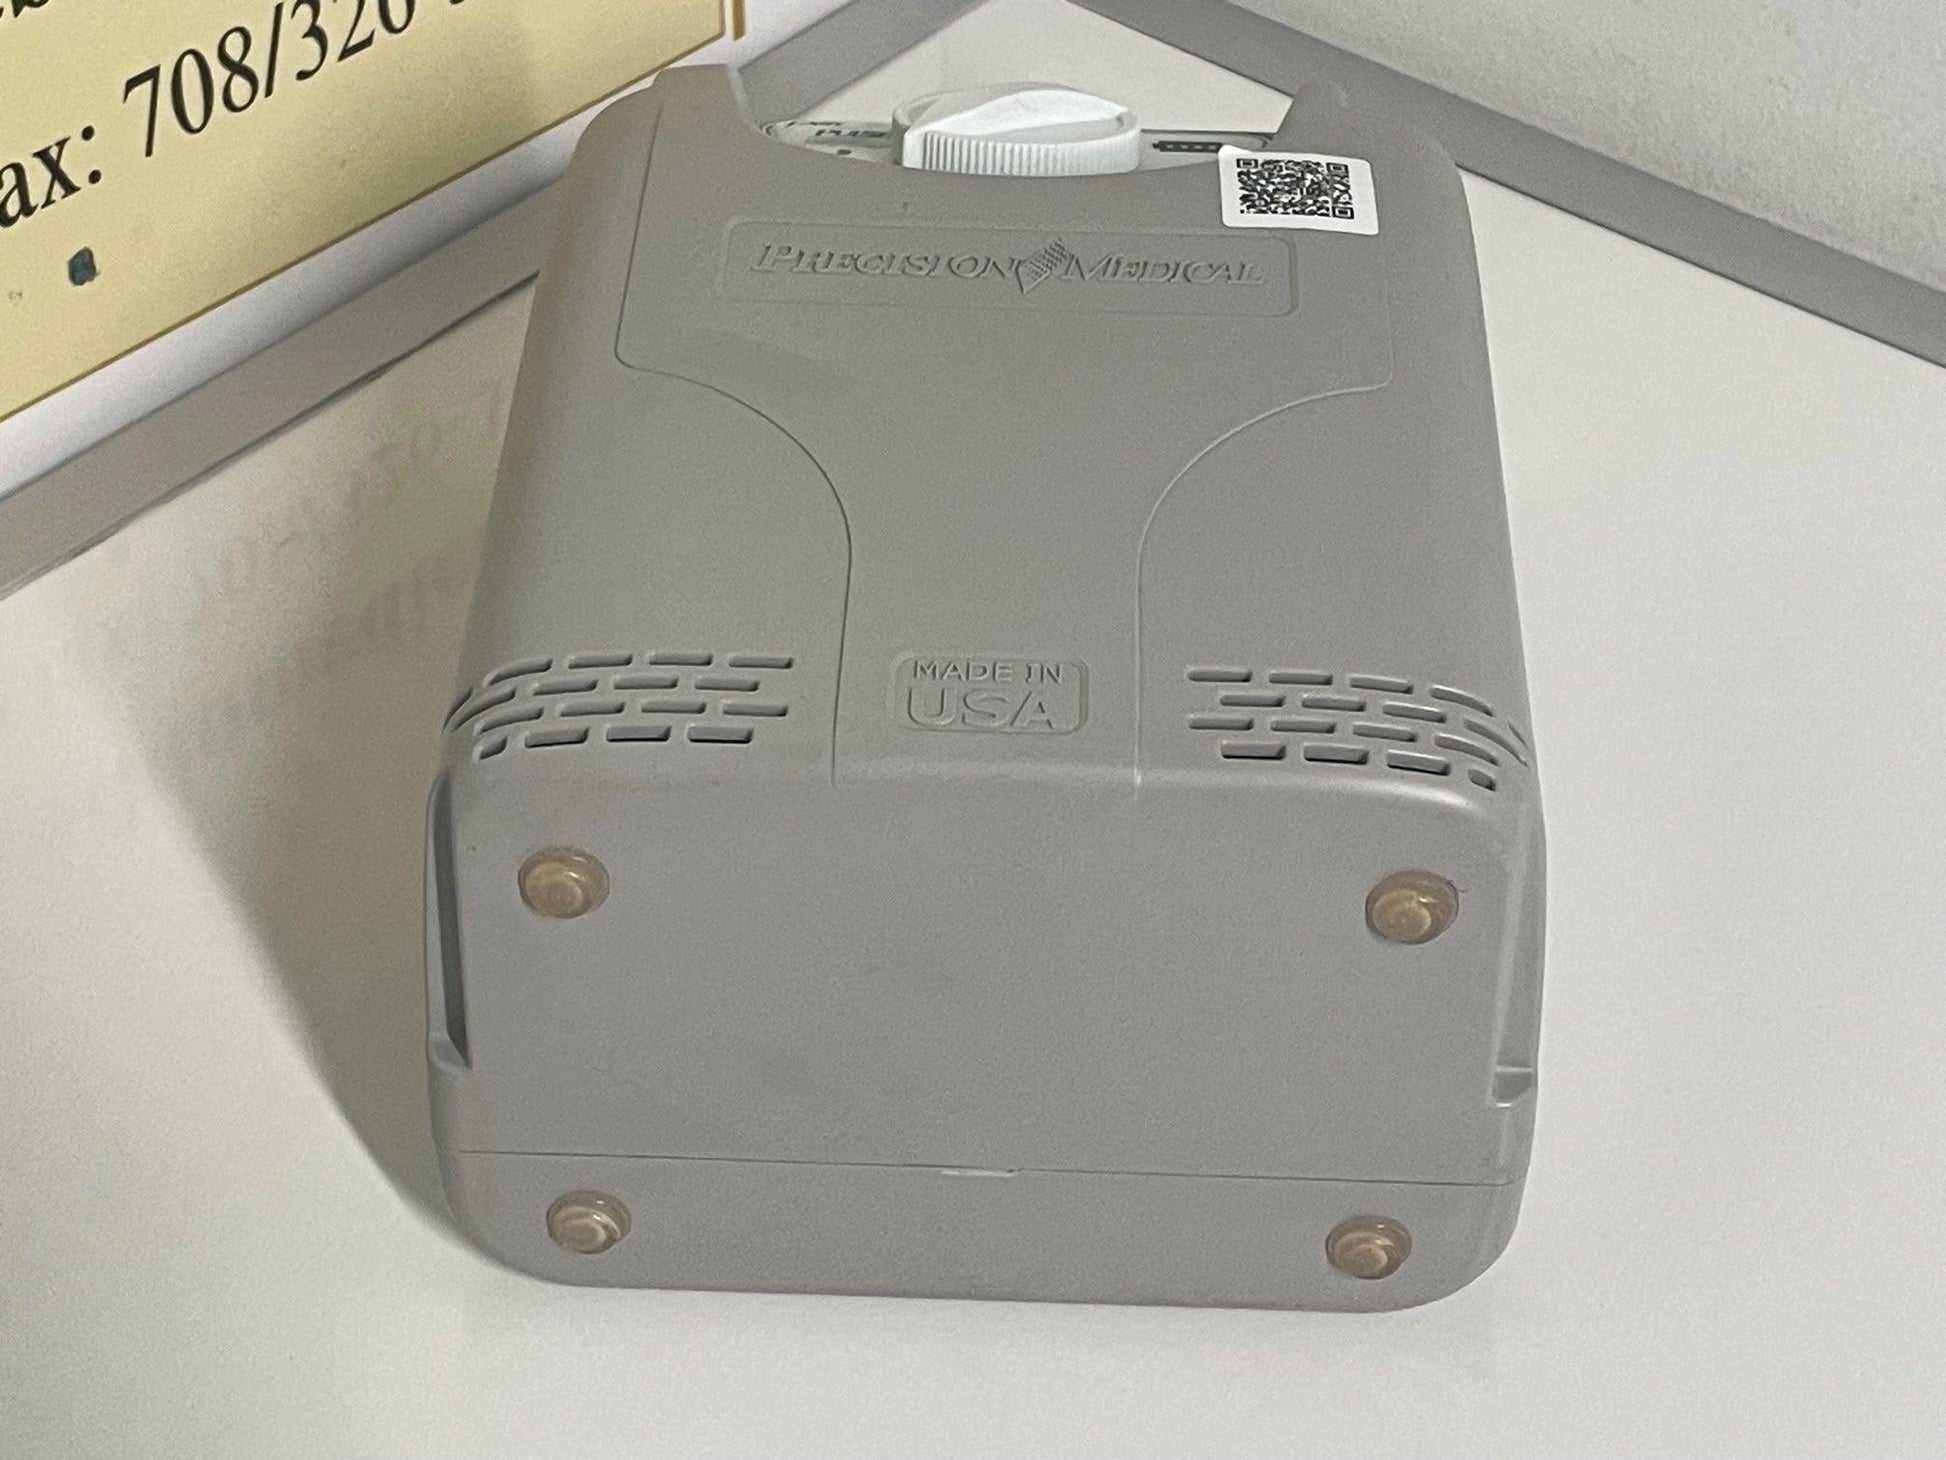 REFURBISHED POC3 EasyPulse 3 Liter Portable Oxygen Concentrator PM4130 - MBR Medicals